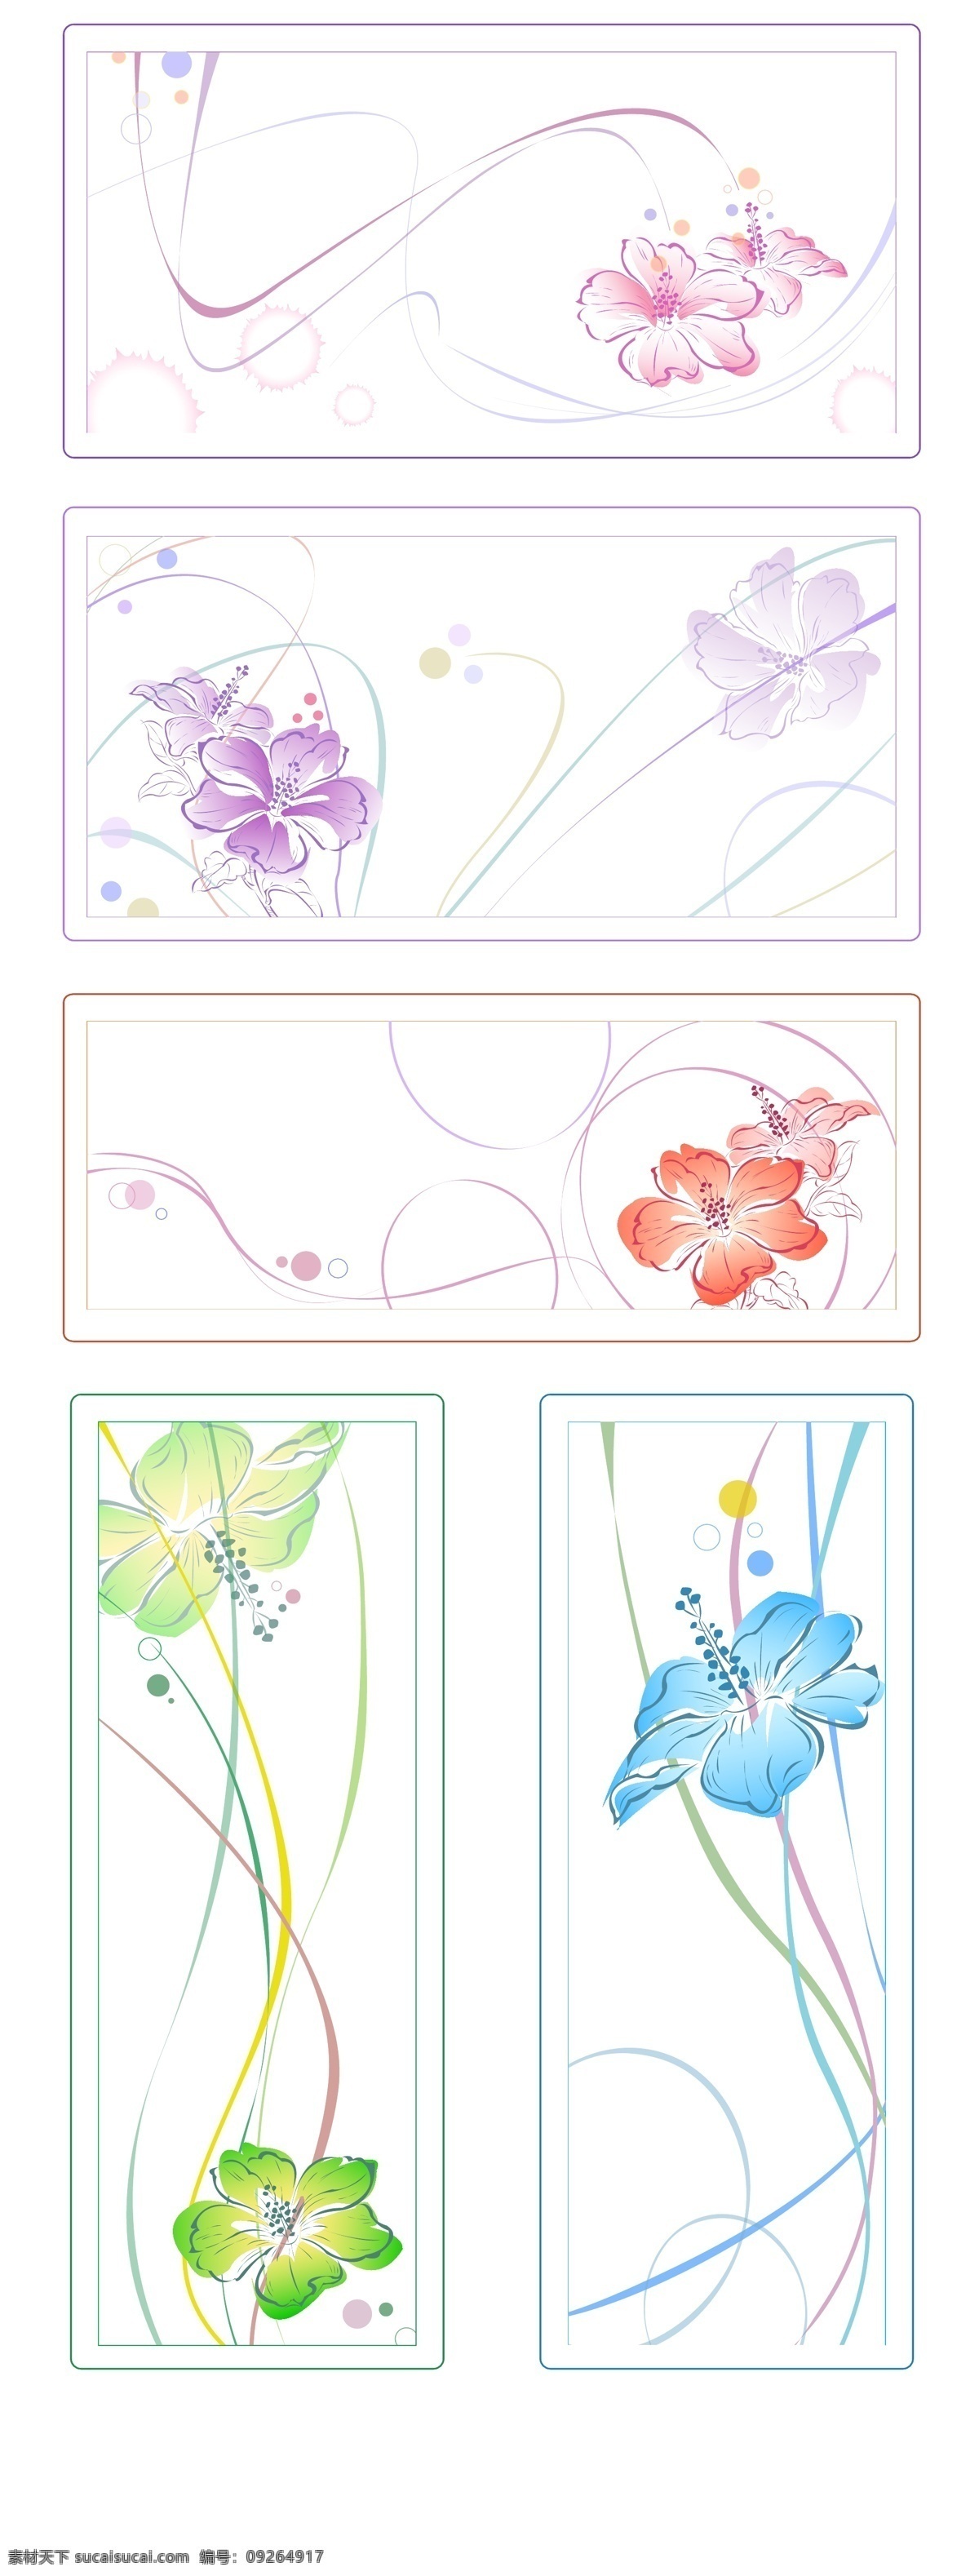 五色 水彩 风格 花卉 矢量 花 花朵 水彩画 五色水彩画 水彩画风格 风格的花朵 向量 矢量图 花纹花边